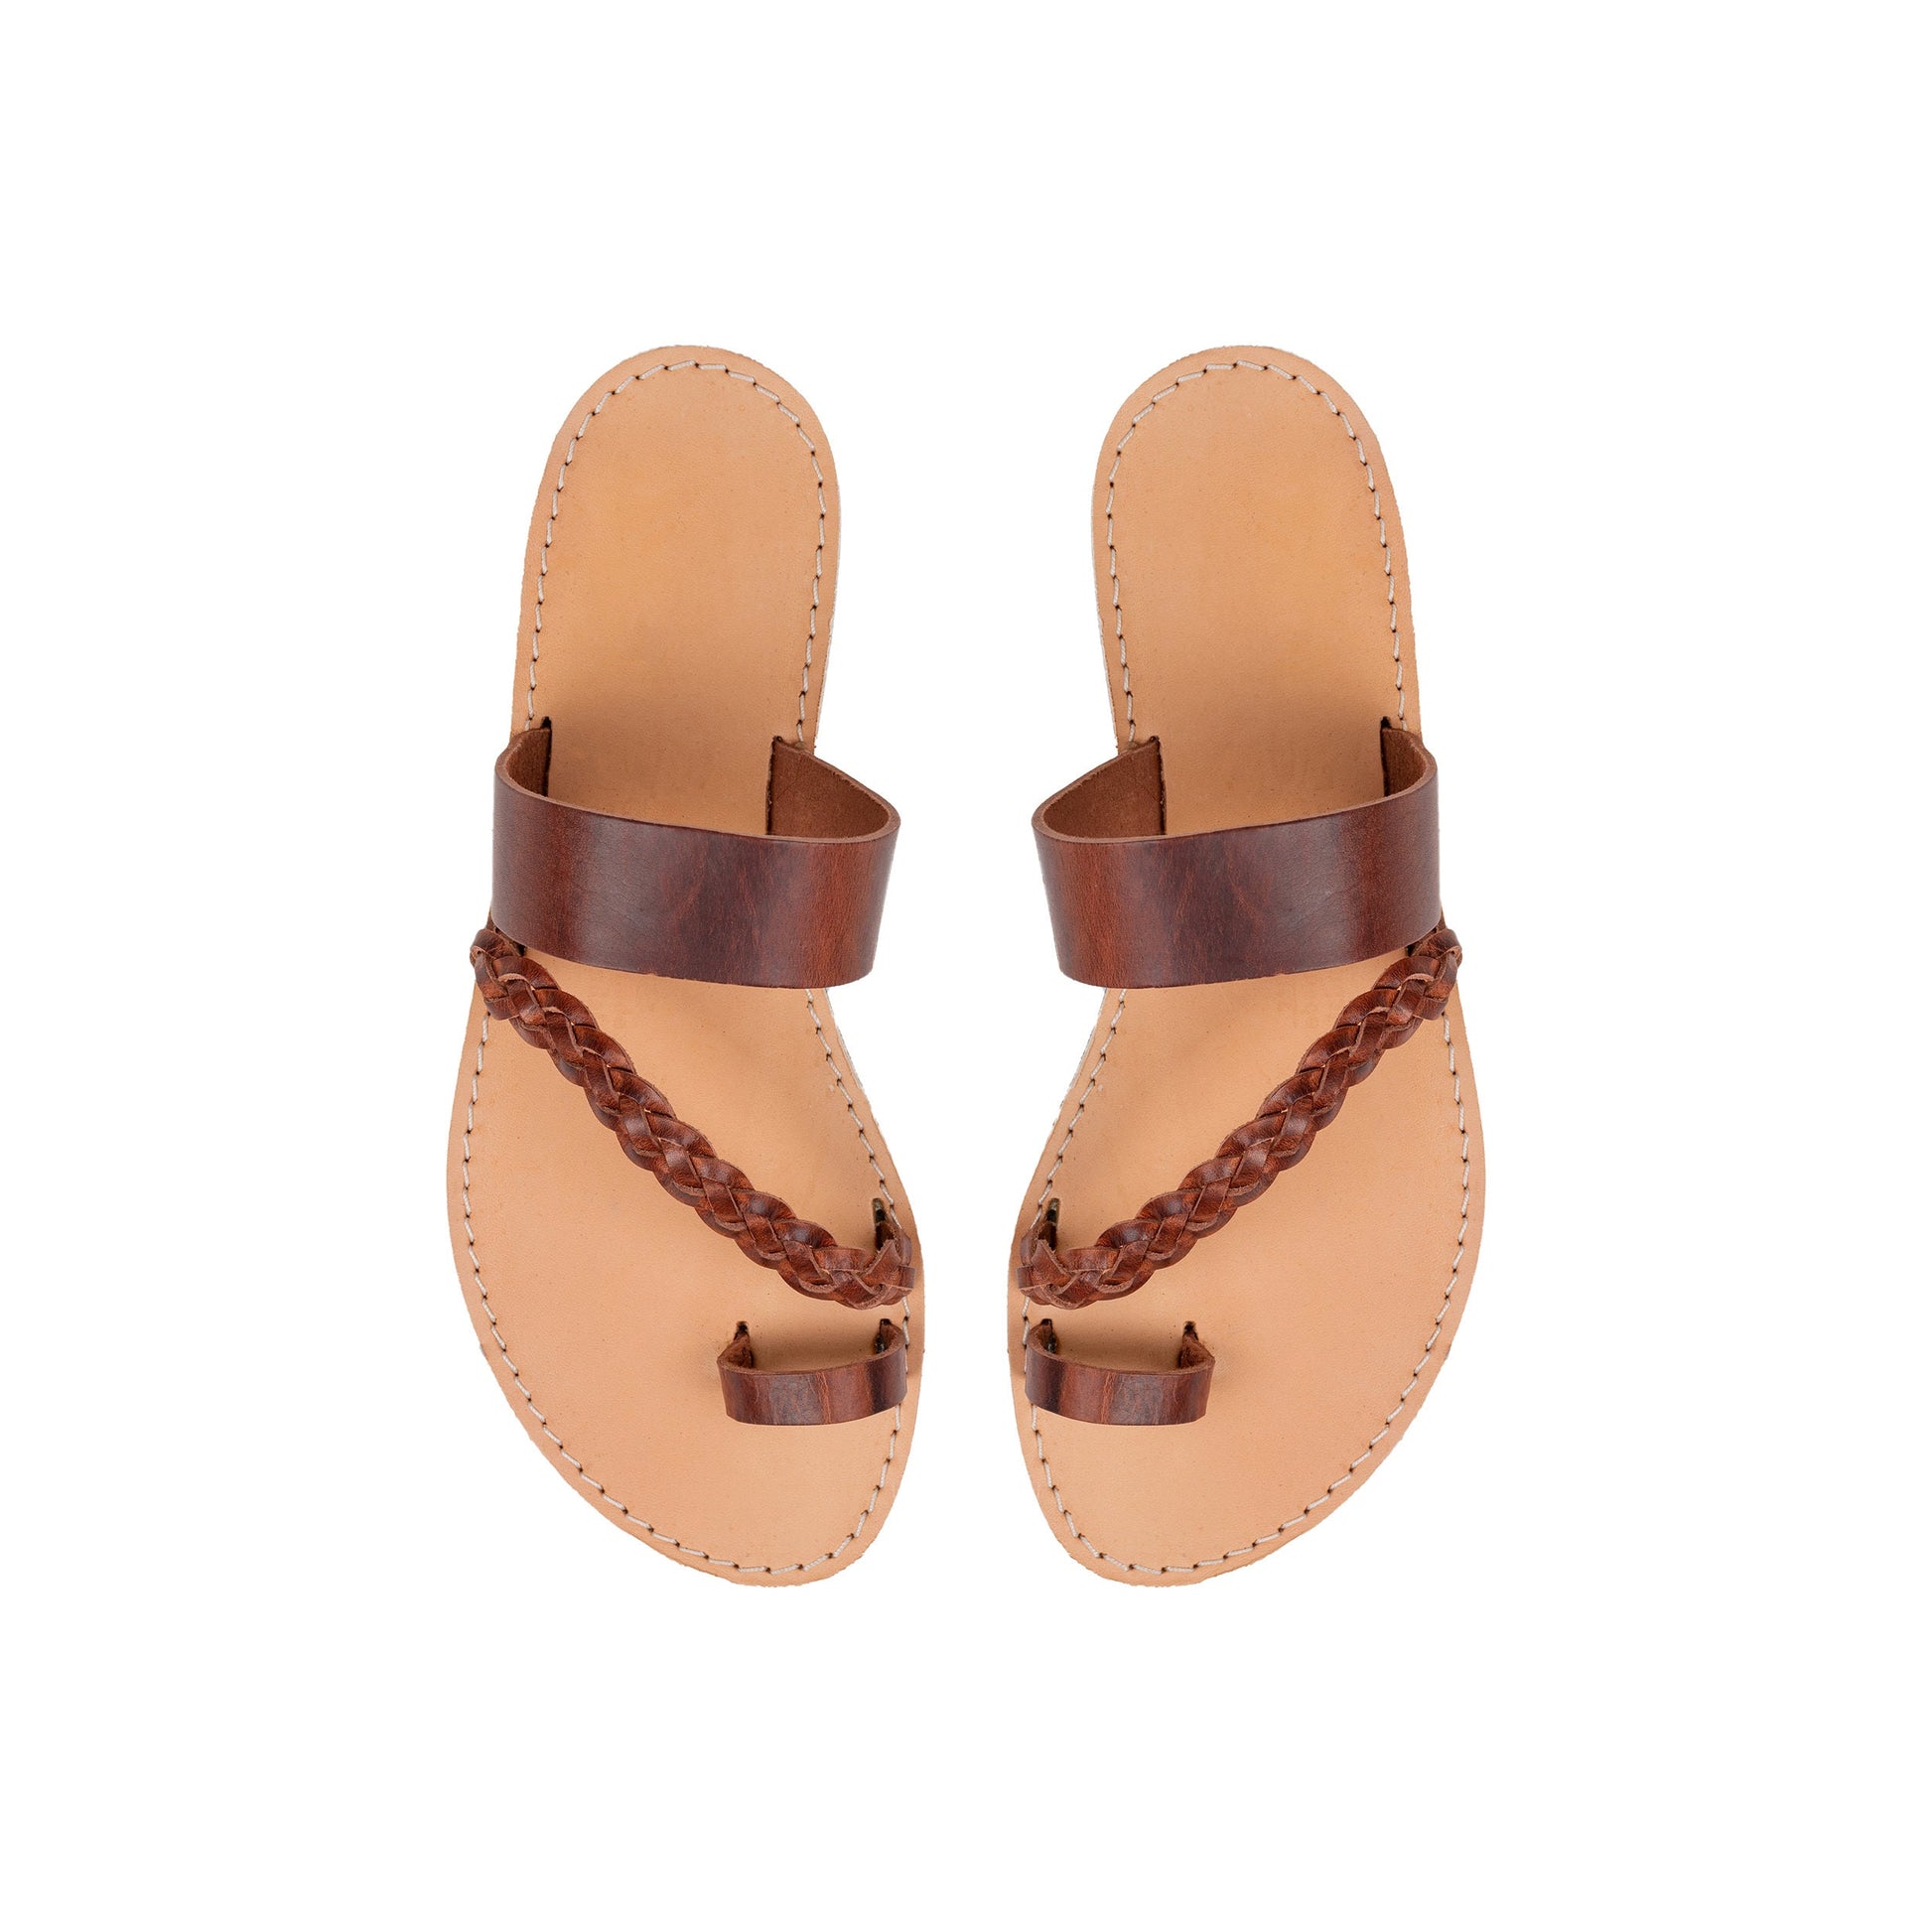 Leather sandals woman toe ring, greek sandals, strappy leather sandals, slide sandals, sandales grecques femme, leder sandalen